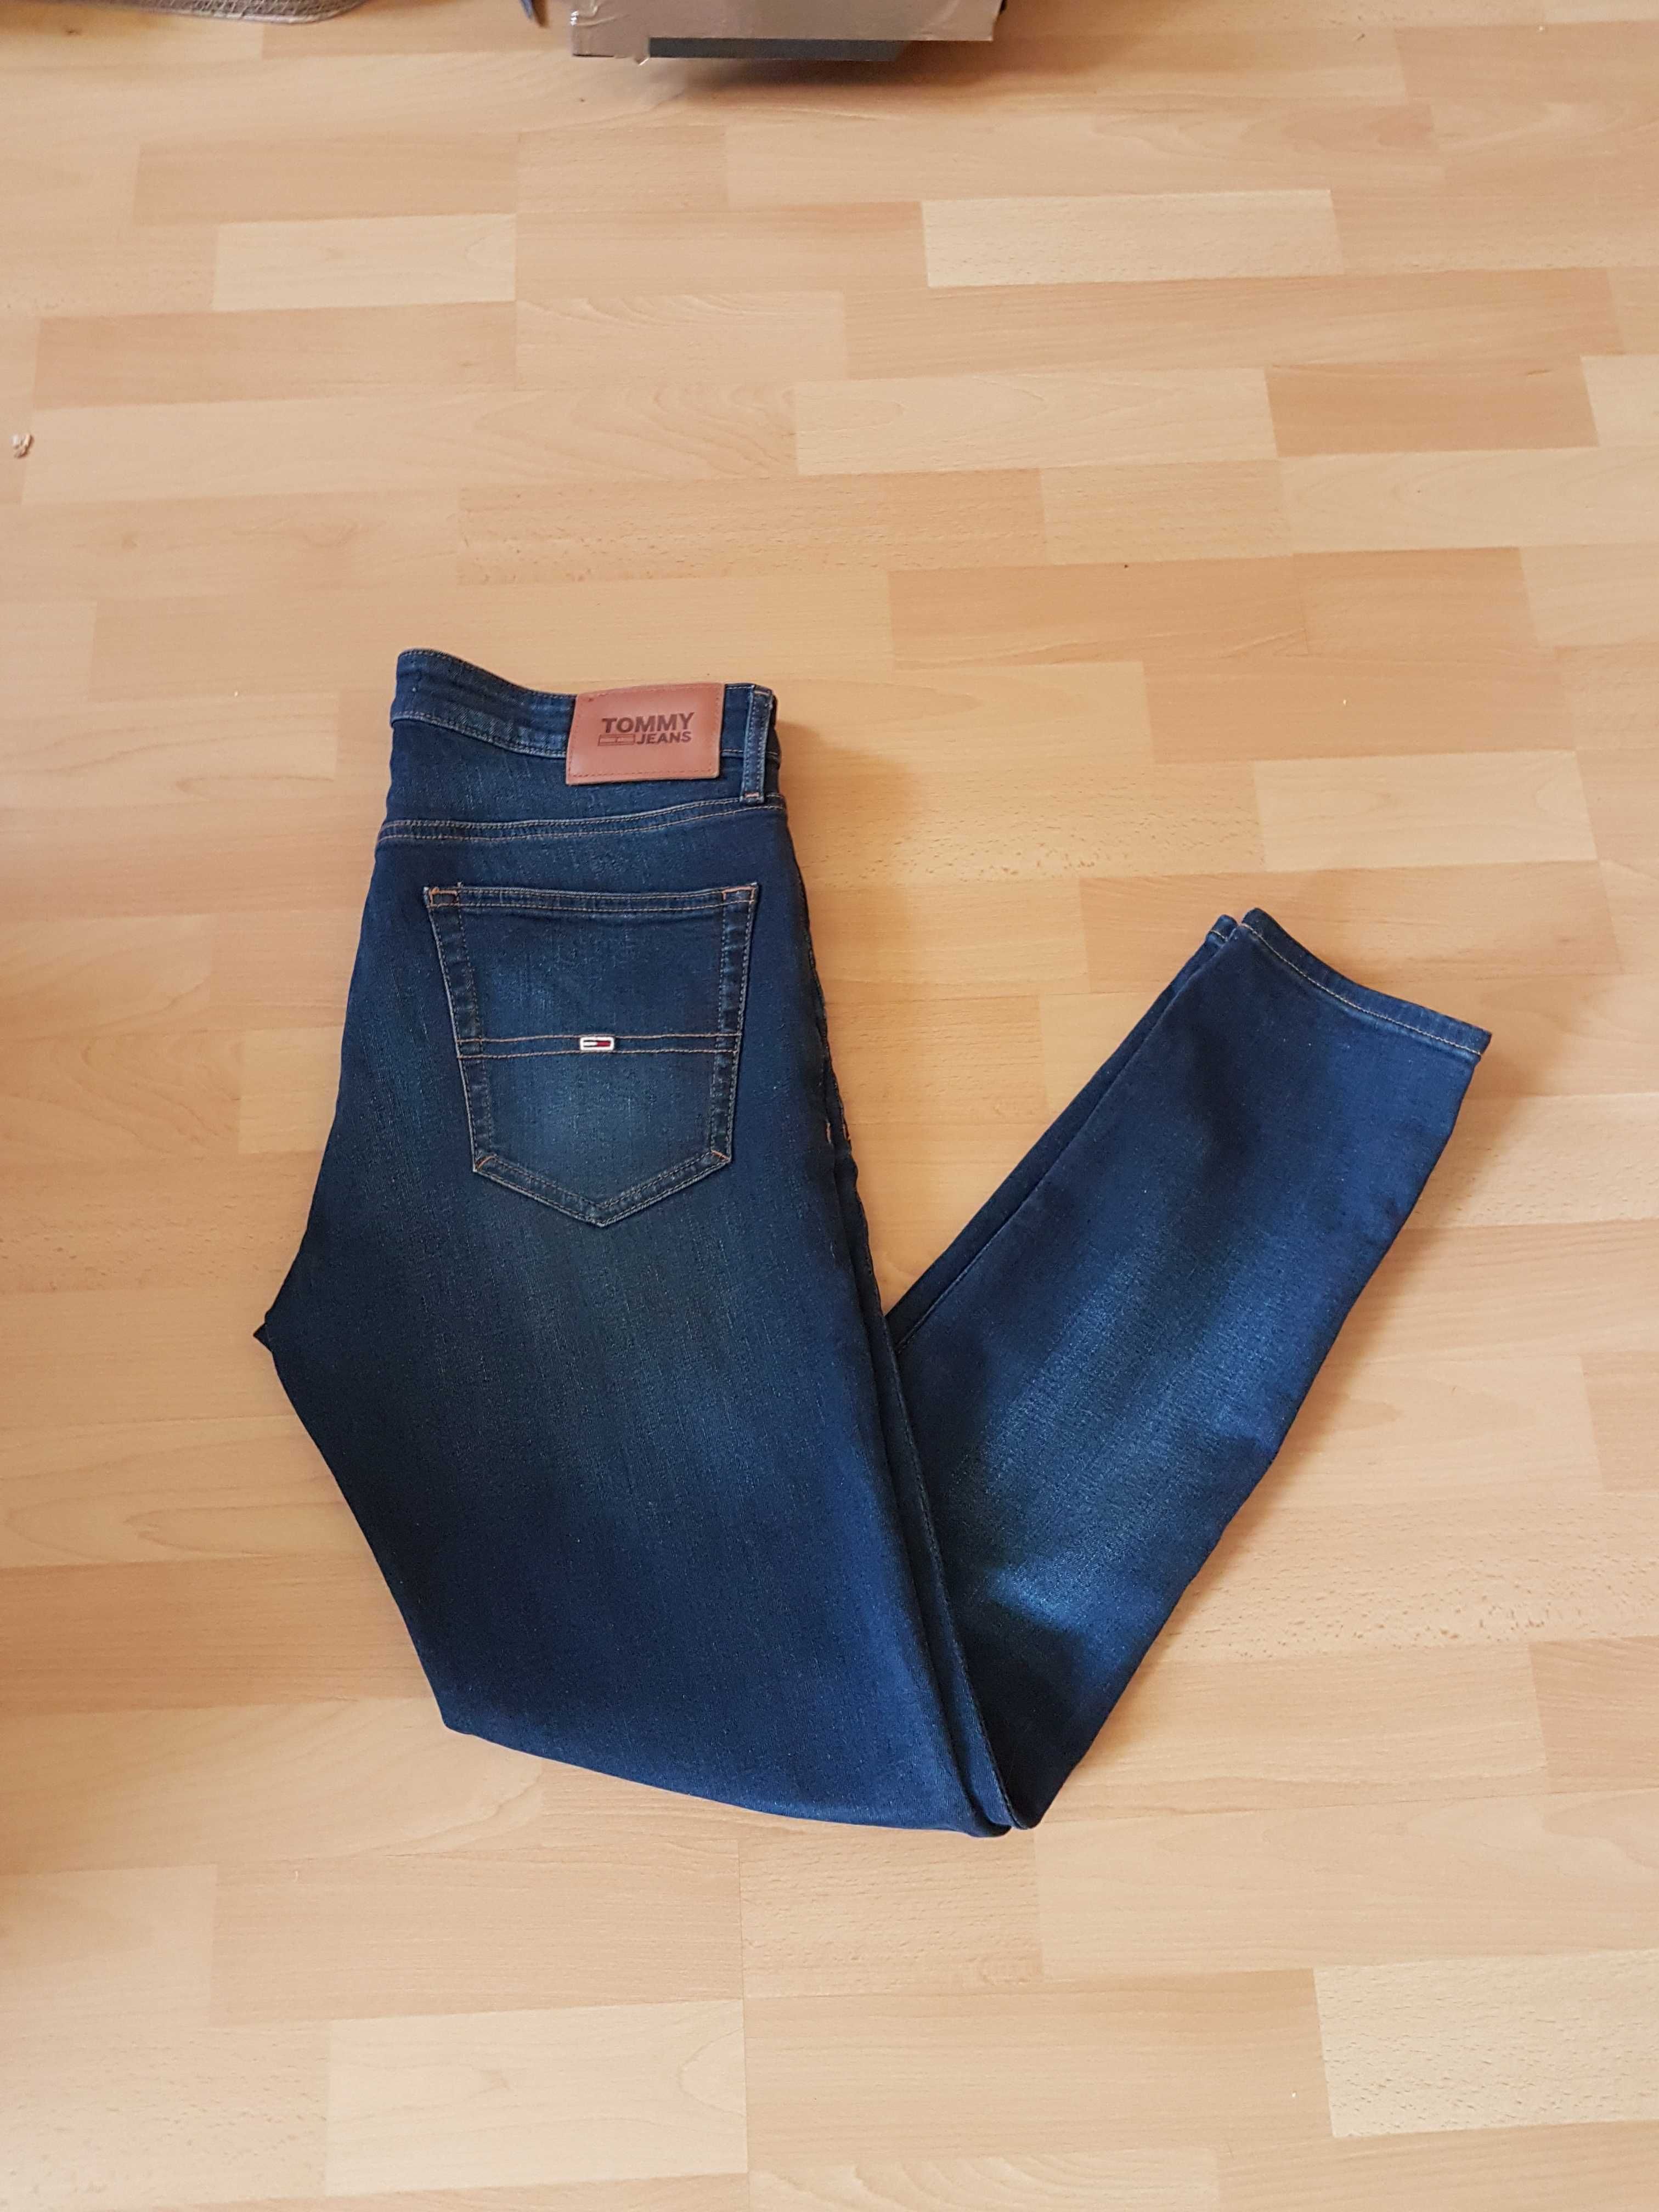 Tommy Hilfiger W31 L32 spodnie jeansowe slim skinny rurki 31/32 NOWE